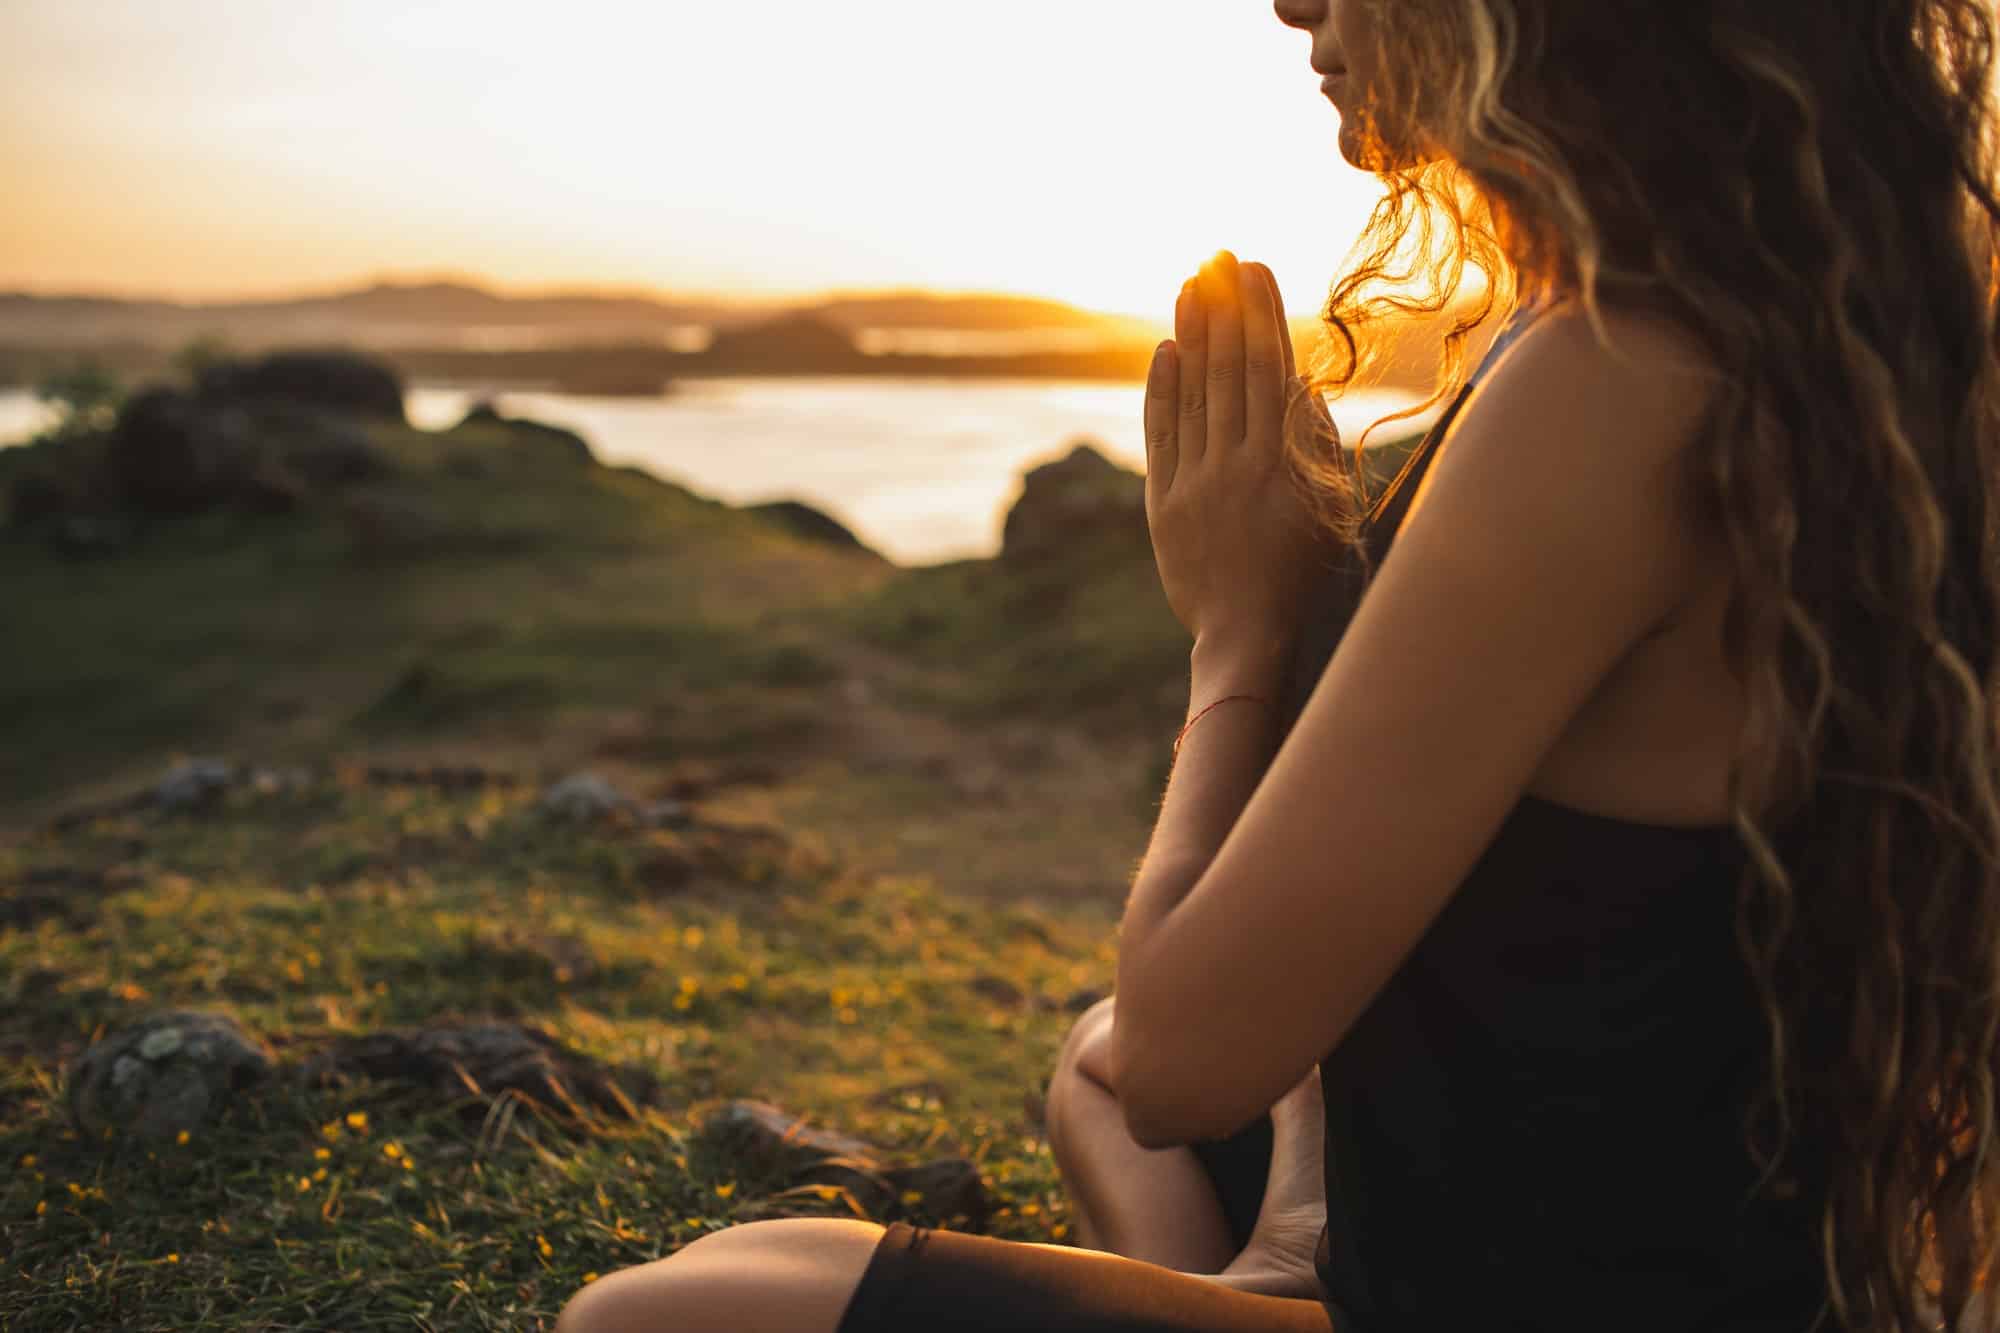 Mujer rezando sola al amanecer. Fondo de la naturaleza. Concepto espiritual y emocional